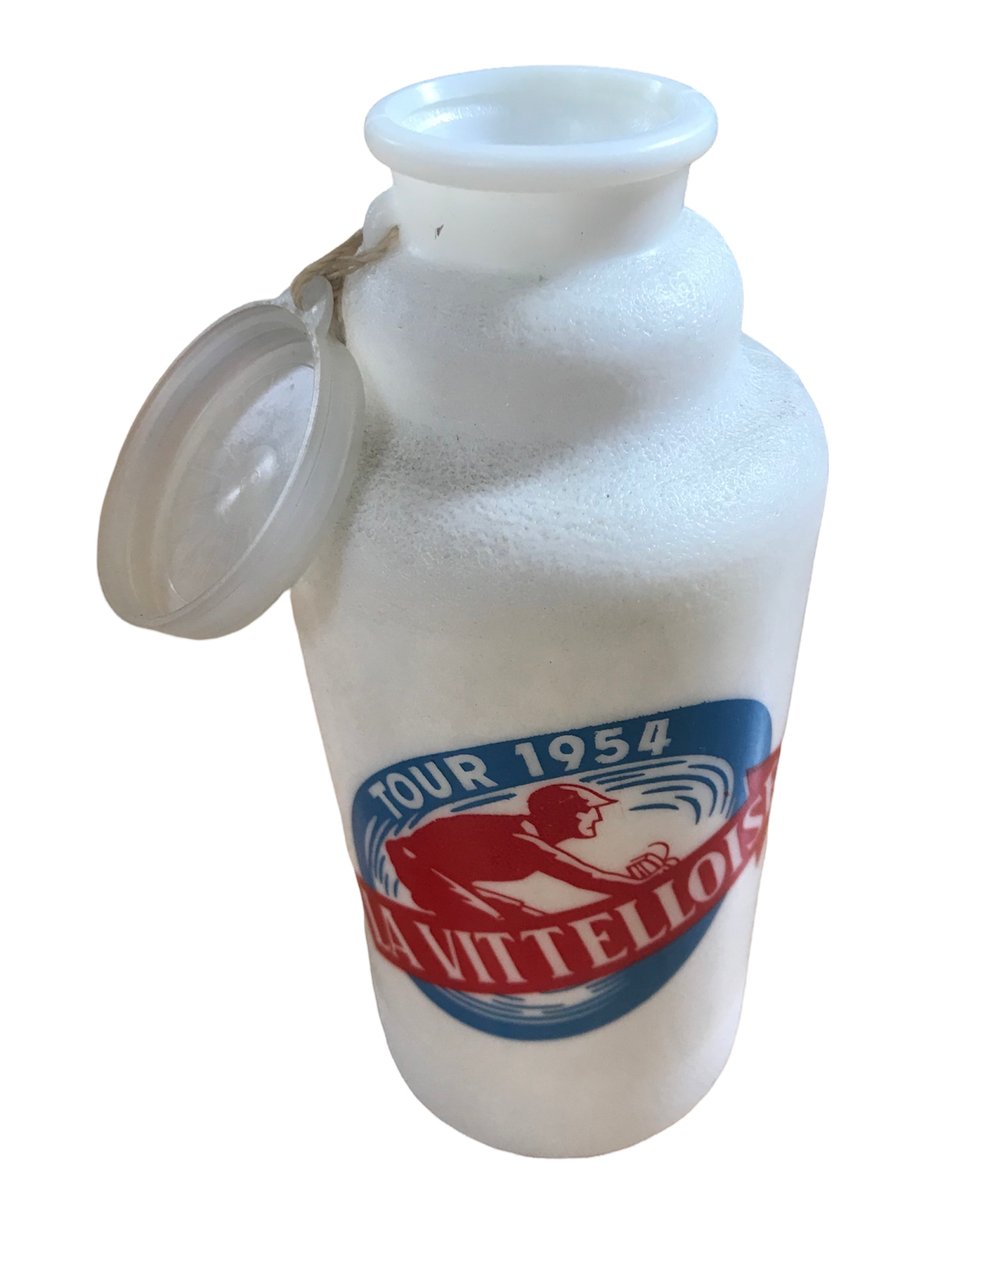 1954 ðŸ‡«ðŸ‡· Tour de France / La Vittelloise water bottle 